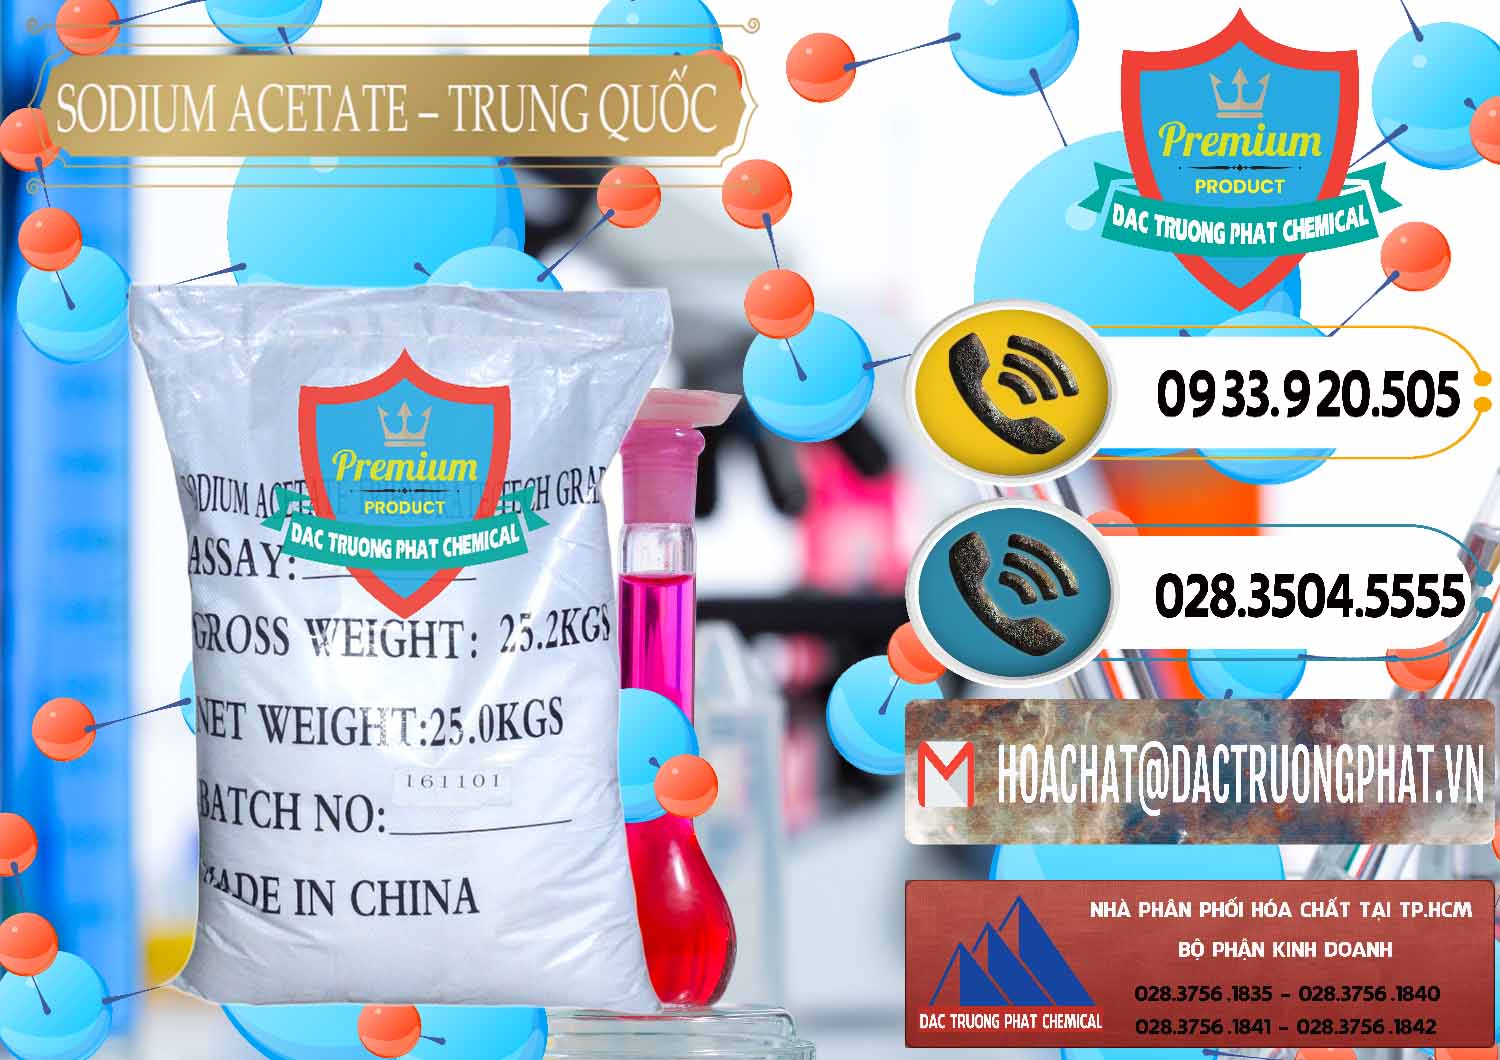 Nơi chuyên bán ( cung ứng ) Sodium Acetate - Natri Acetate Trung Quốc China - 0134 - Nơi cung cấp ( phân phối ) hóa chất tại TP.HCM - hoachatdetnhuom.vn